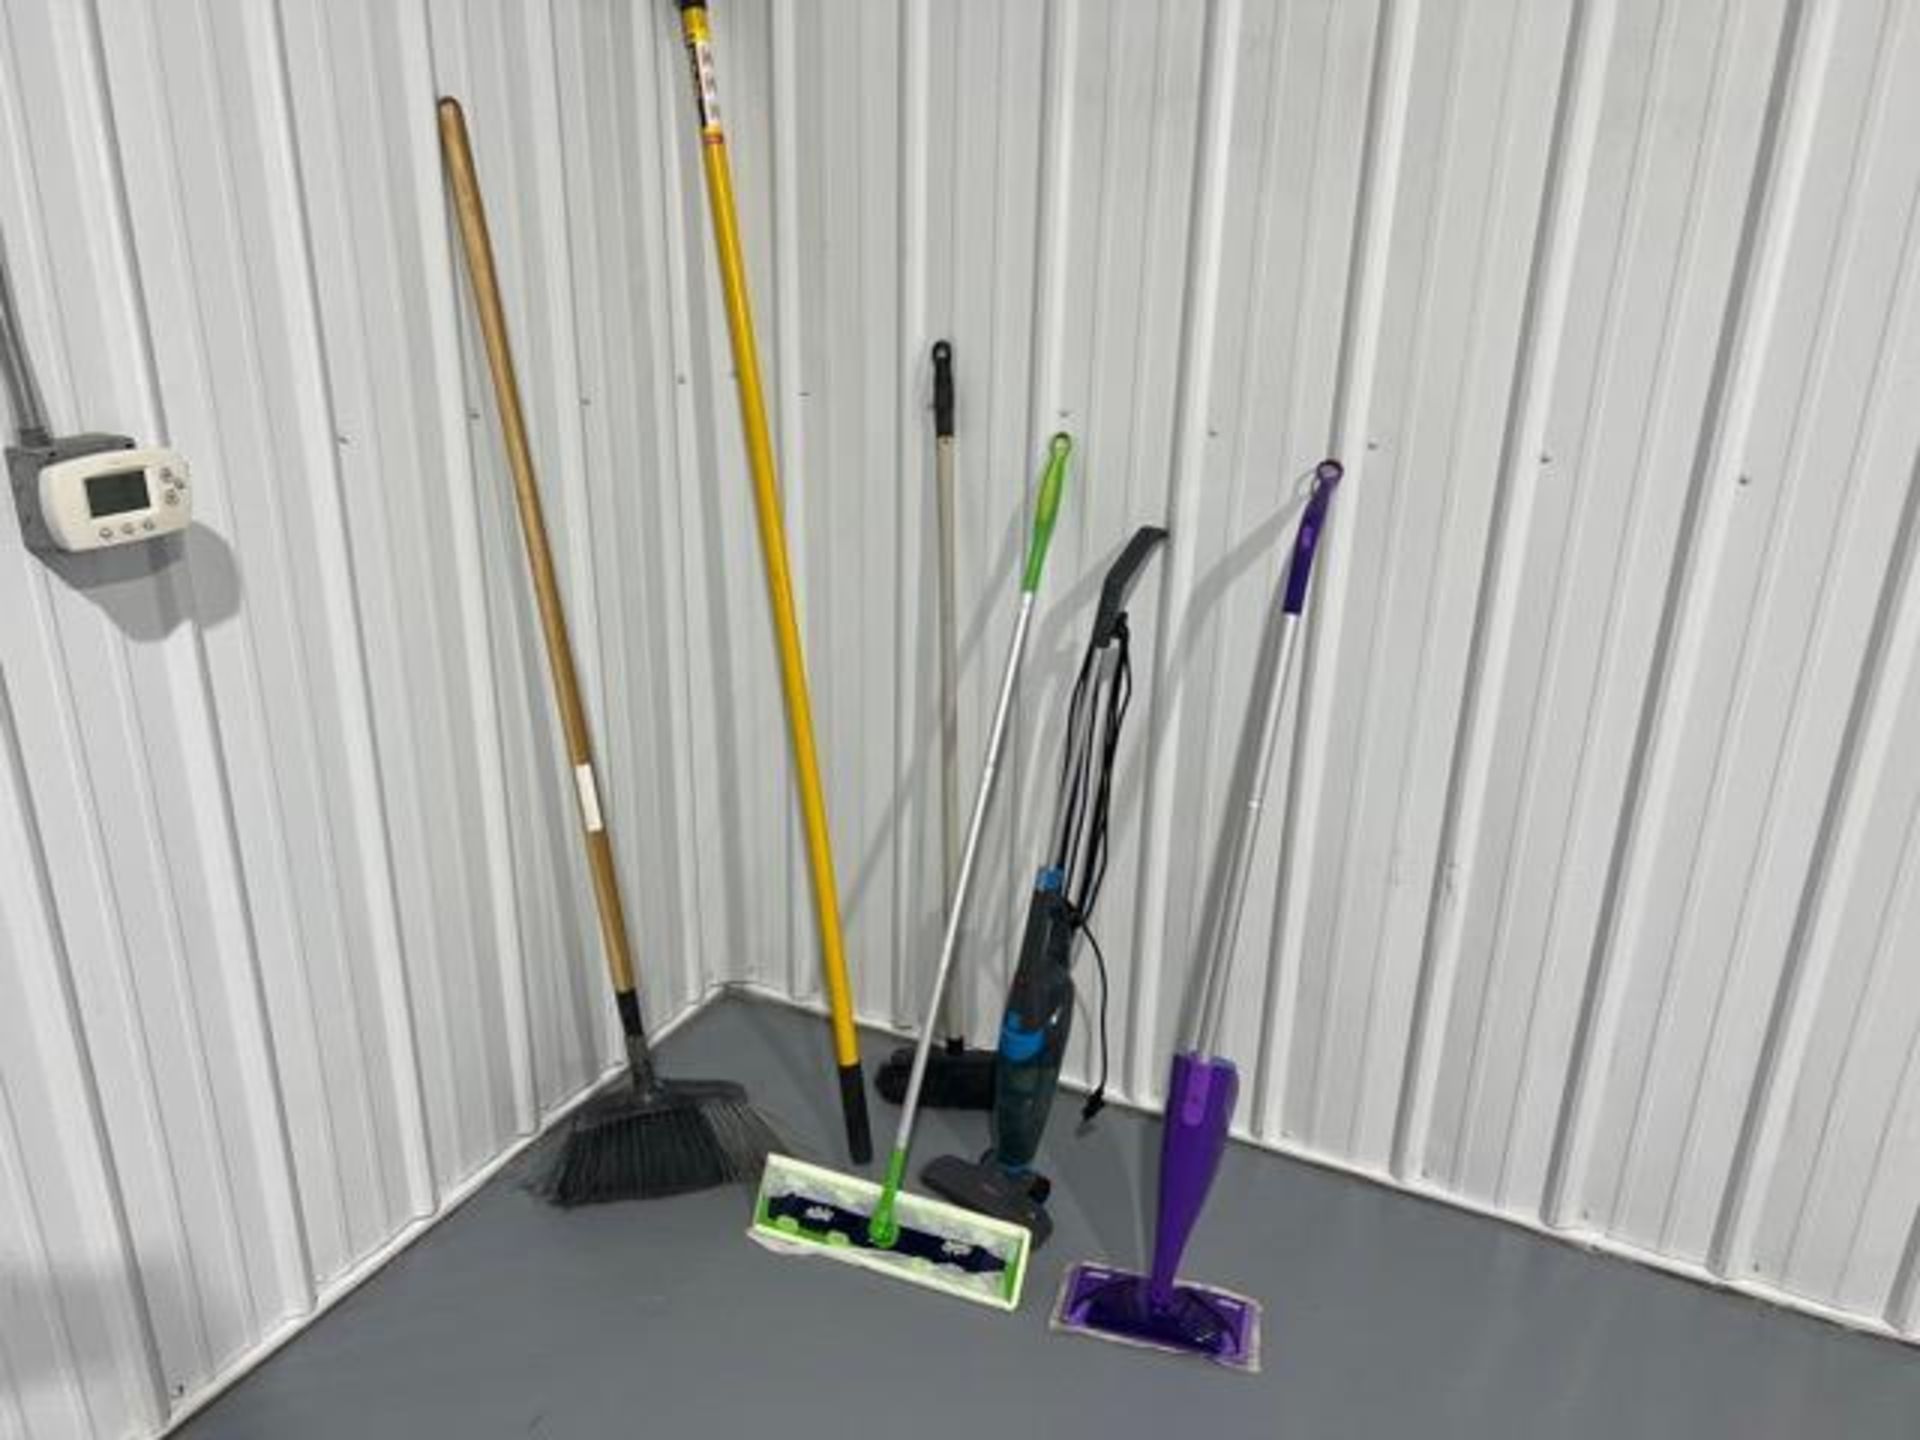 (2) Broom, extension pole, (2) Swiffer mops, vacuum